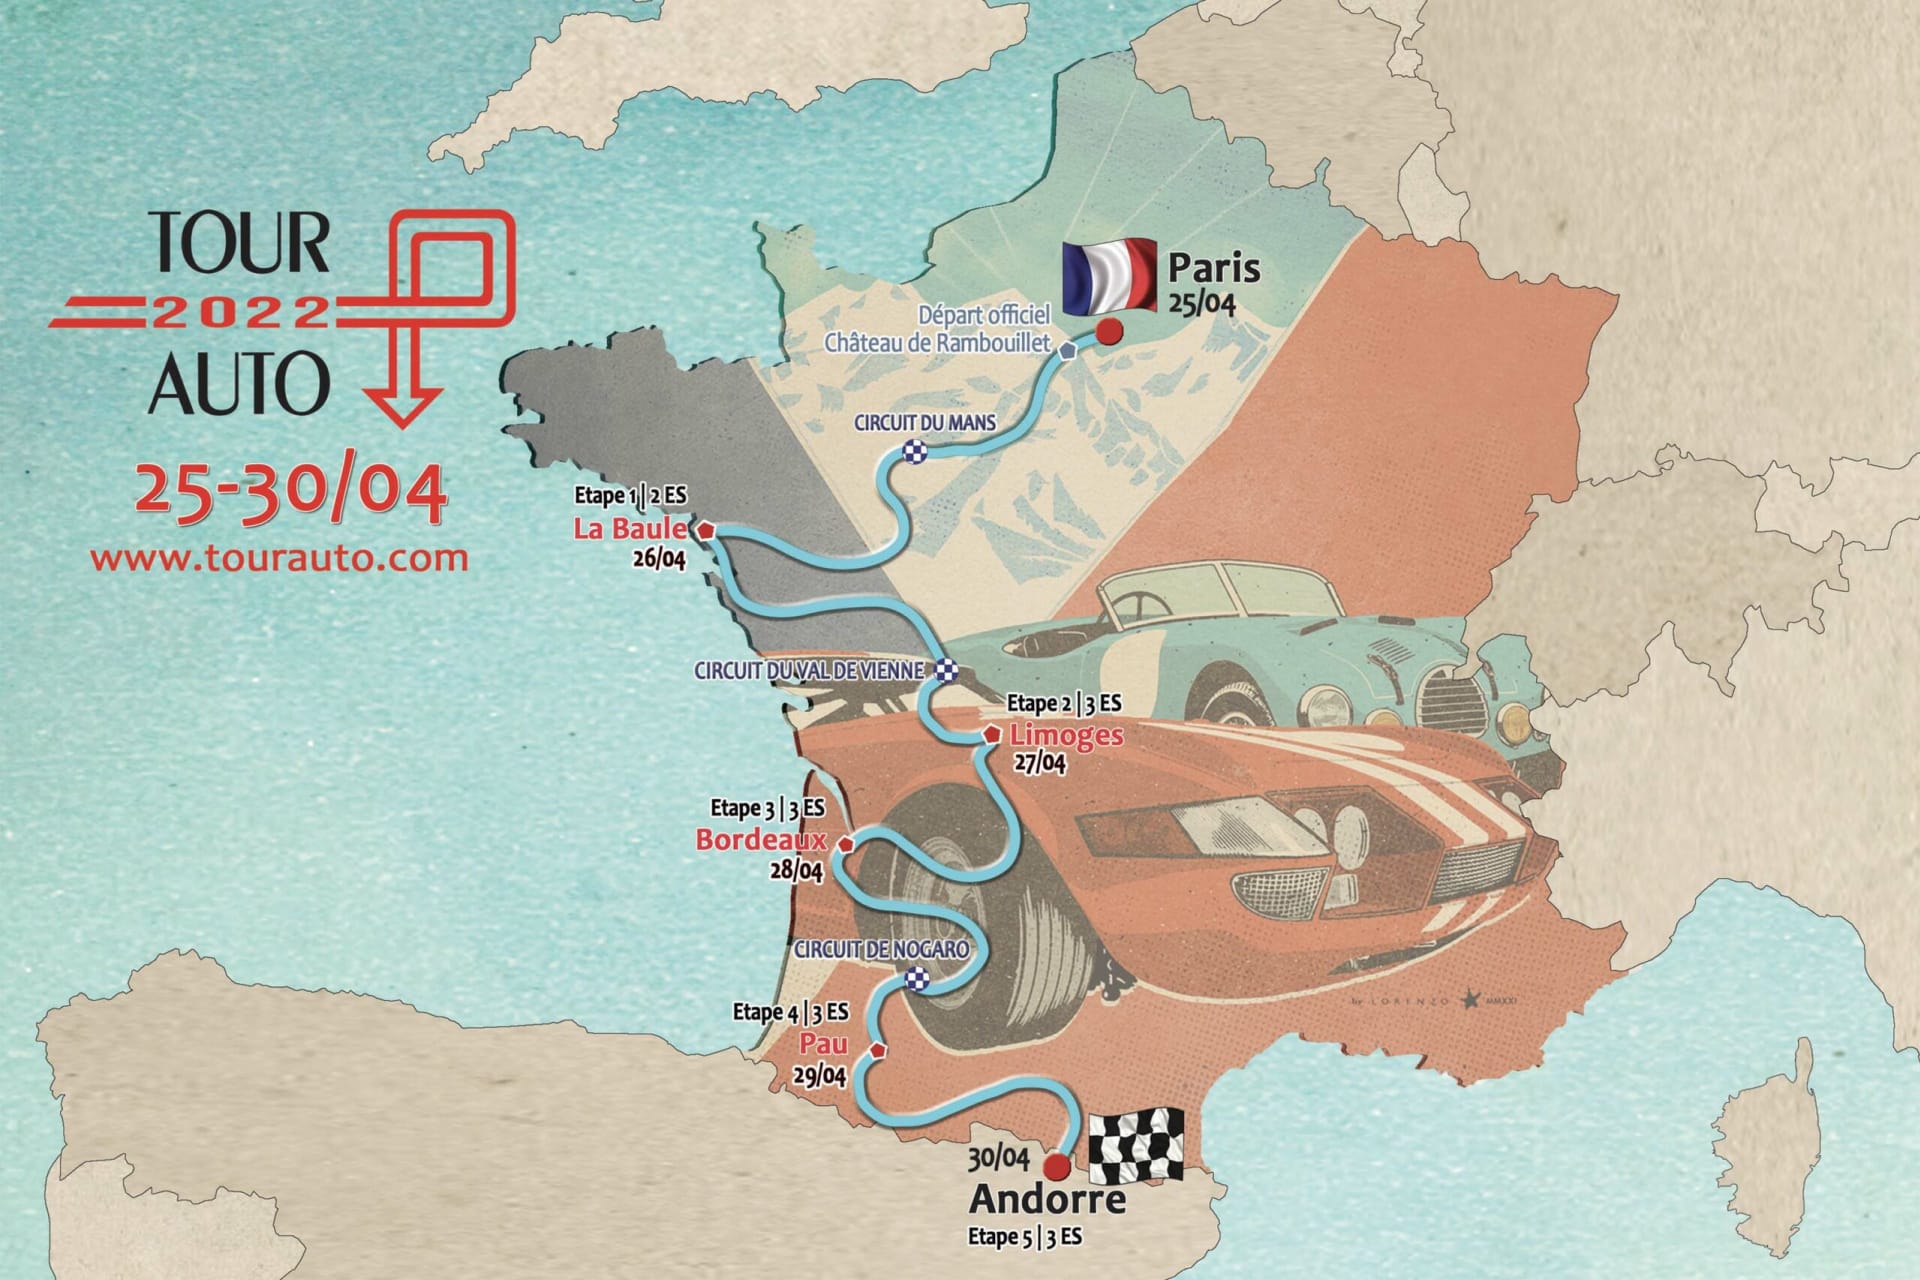 Pět dnů po pěti stech kilometrech v plném tempu, to je Le Tour de France Automobile.